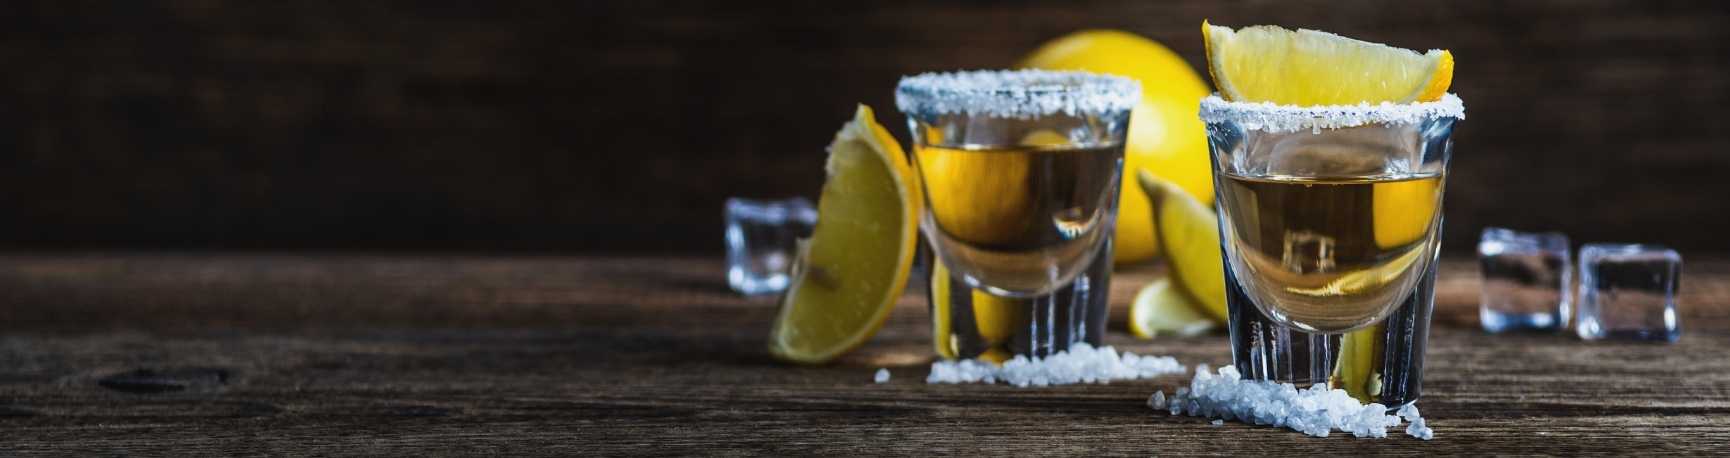 Cocktail Tequila Citron shot et sucre